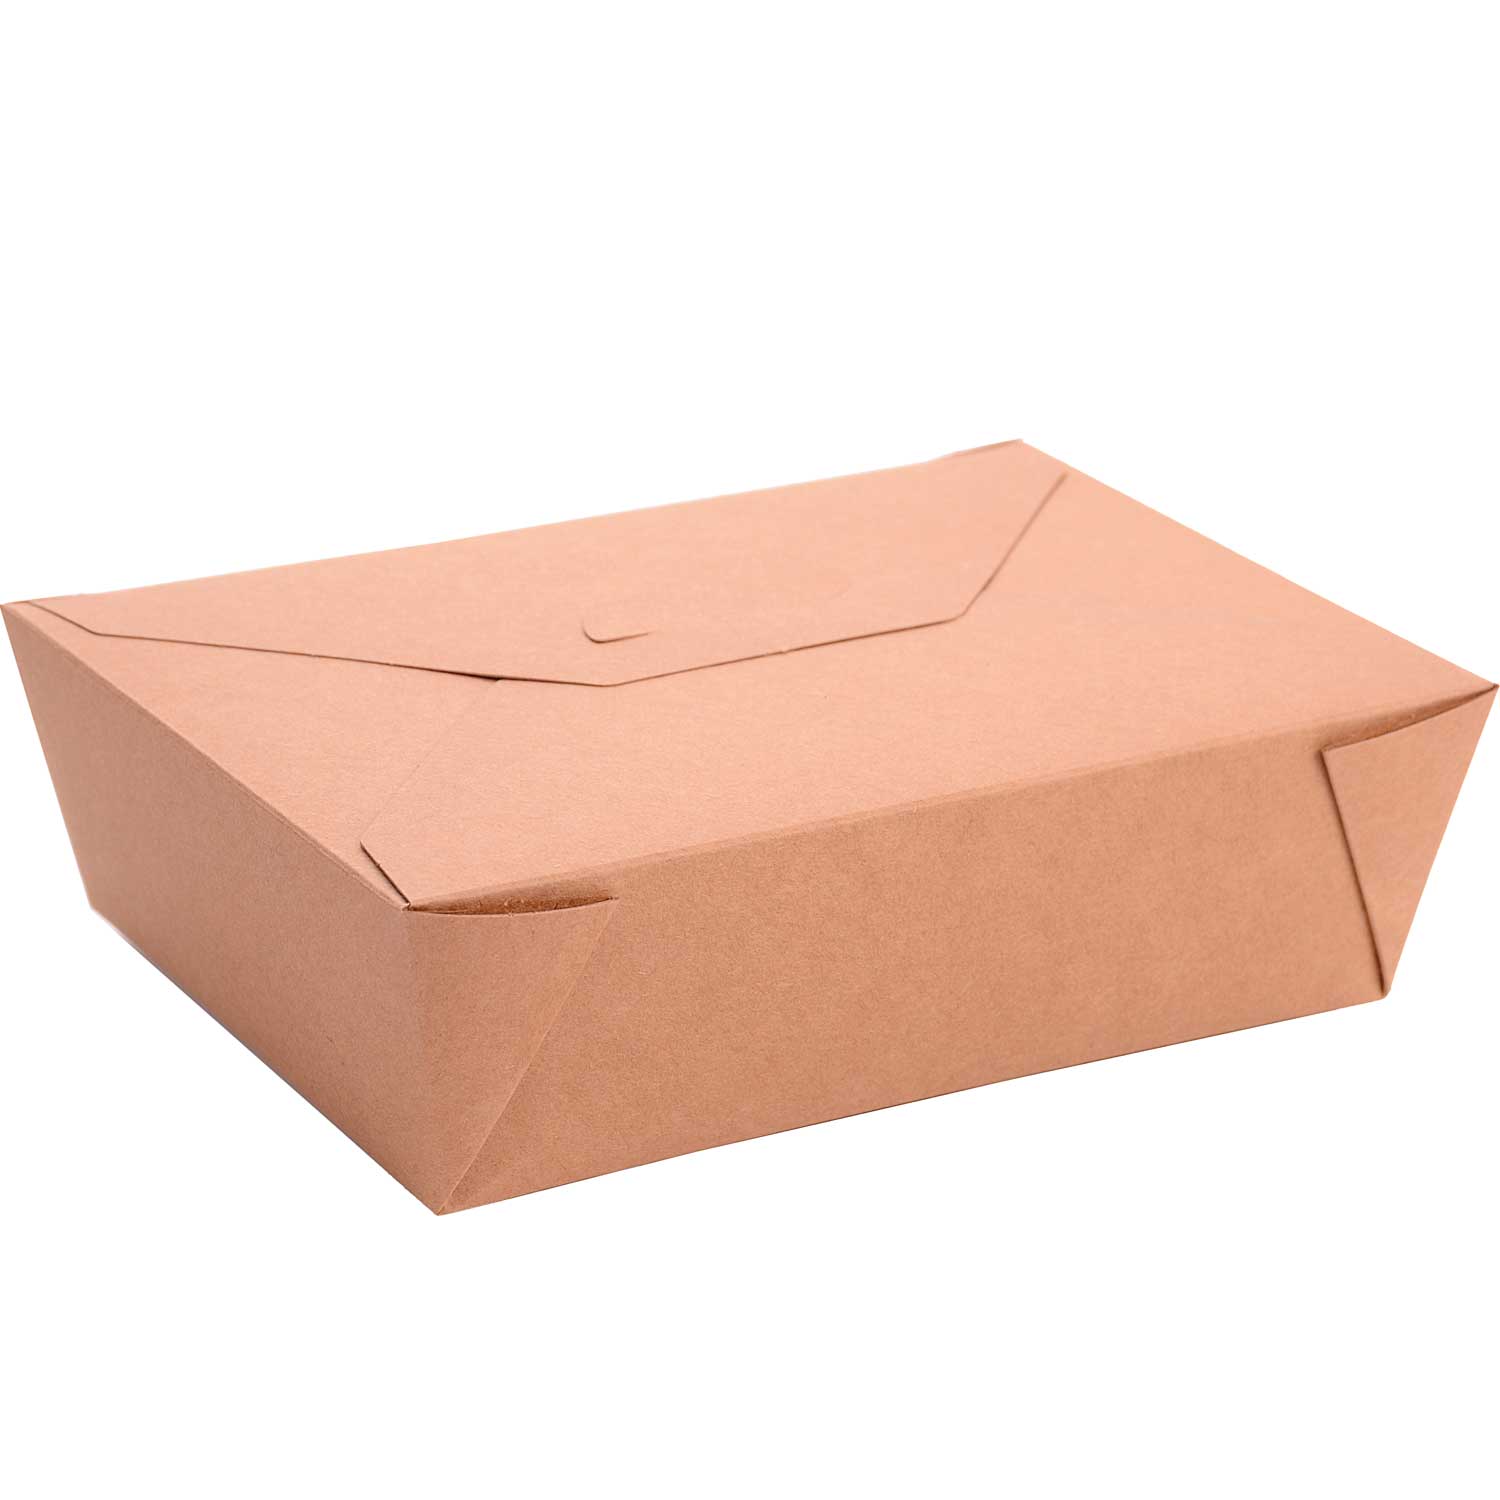 Foldable takeaway box. 45 oz (50)